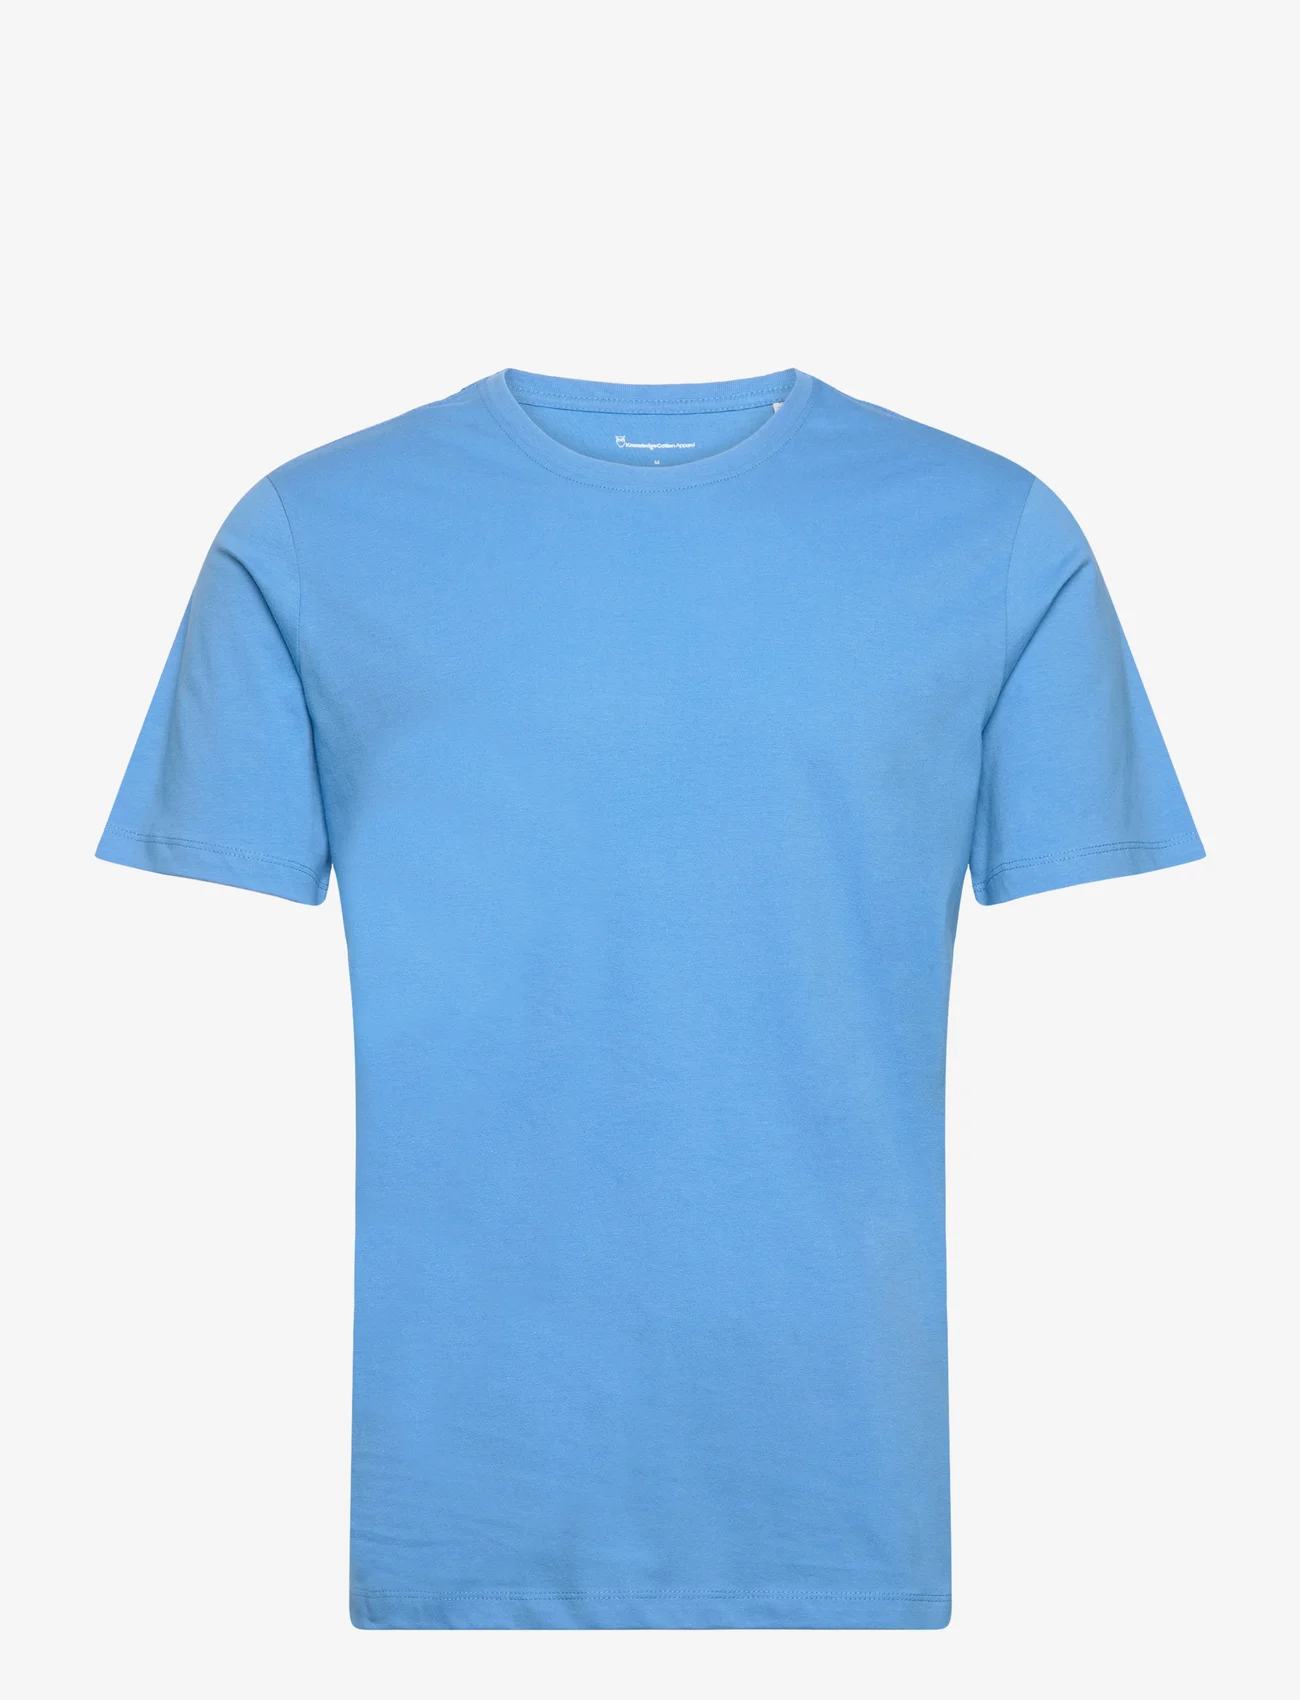 Knowledge Cotton Apparel - AGNAR basic t-shirt - Regenerative - die niedrigsten preise - azure blue - 0